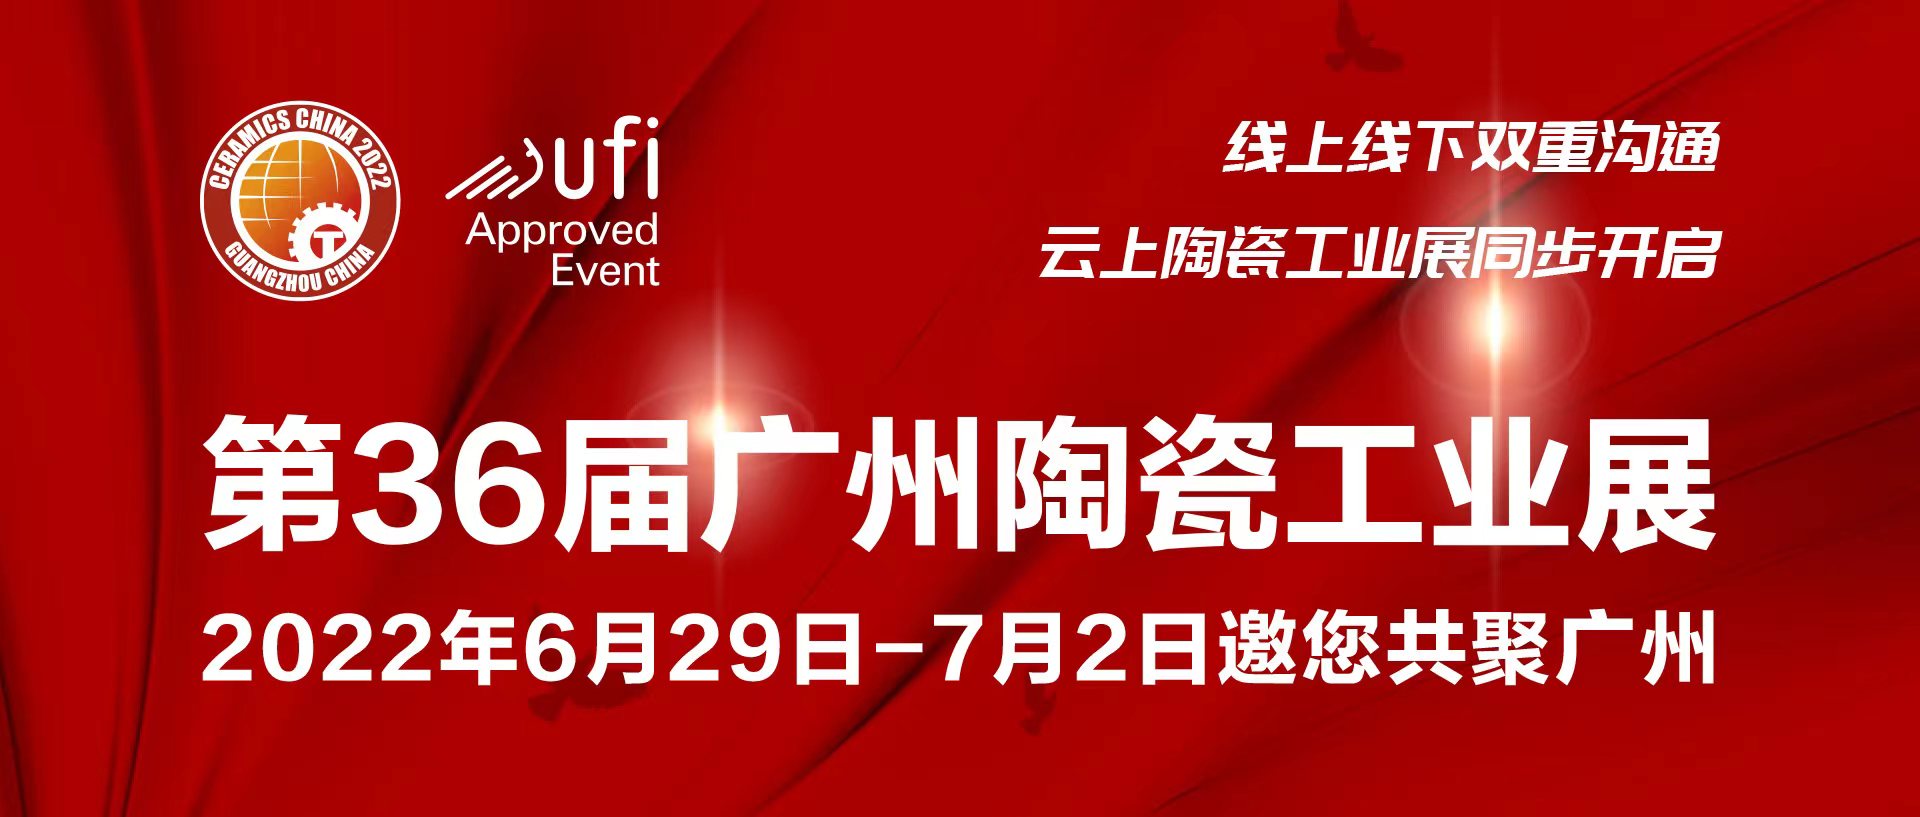 CQ9传奇电子官网科技｜誠邀您參加2022廣州陶瓷工業展